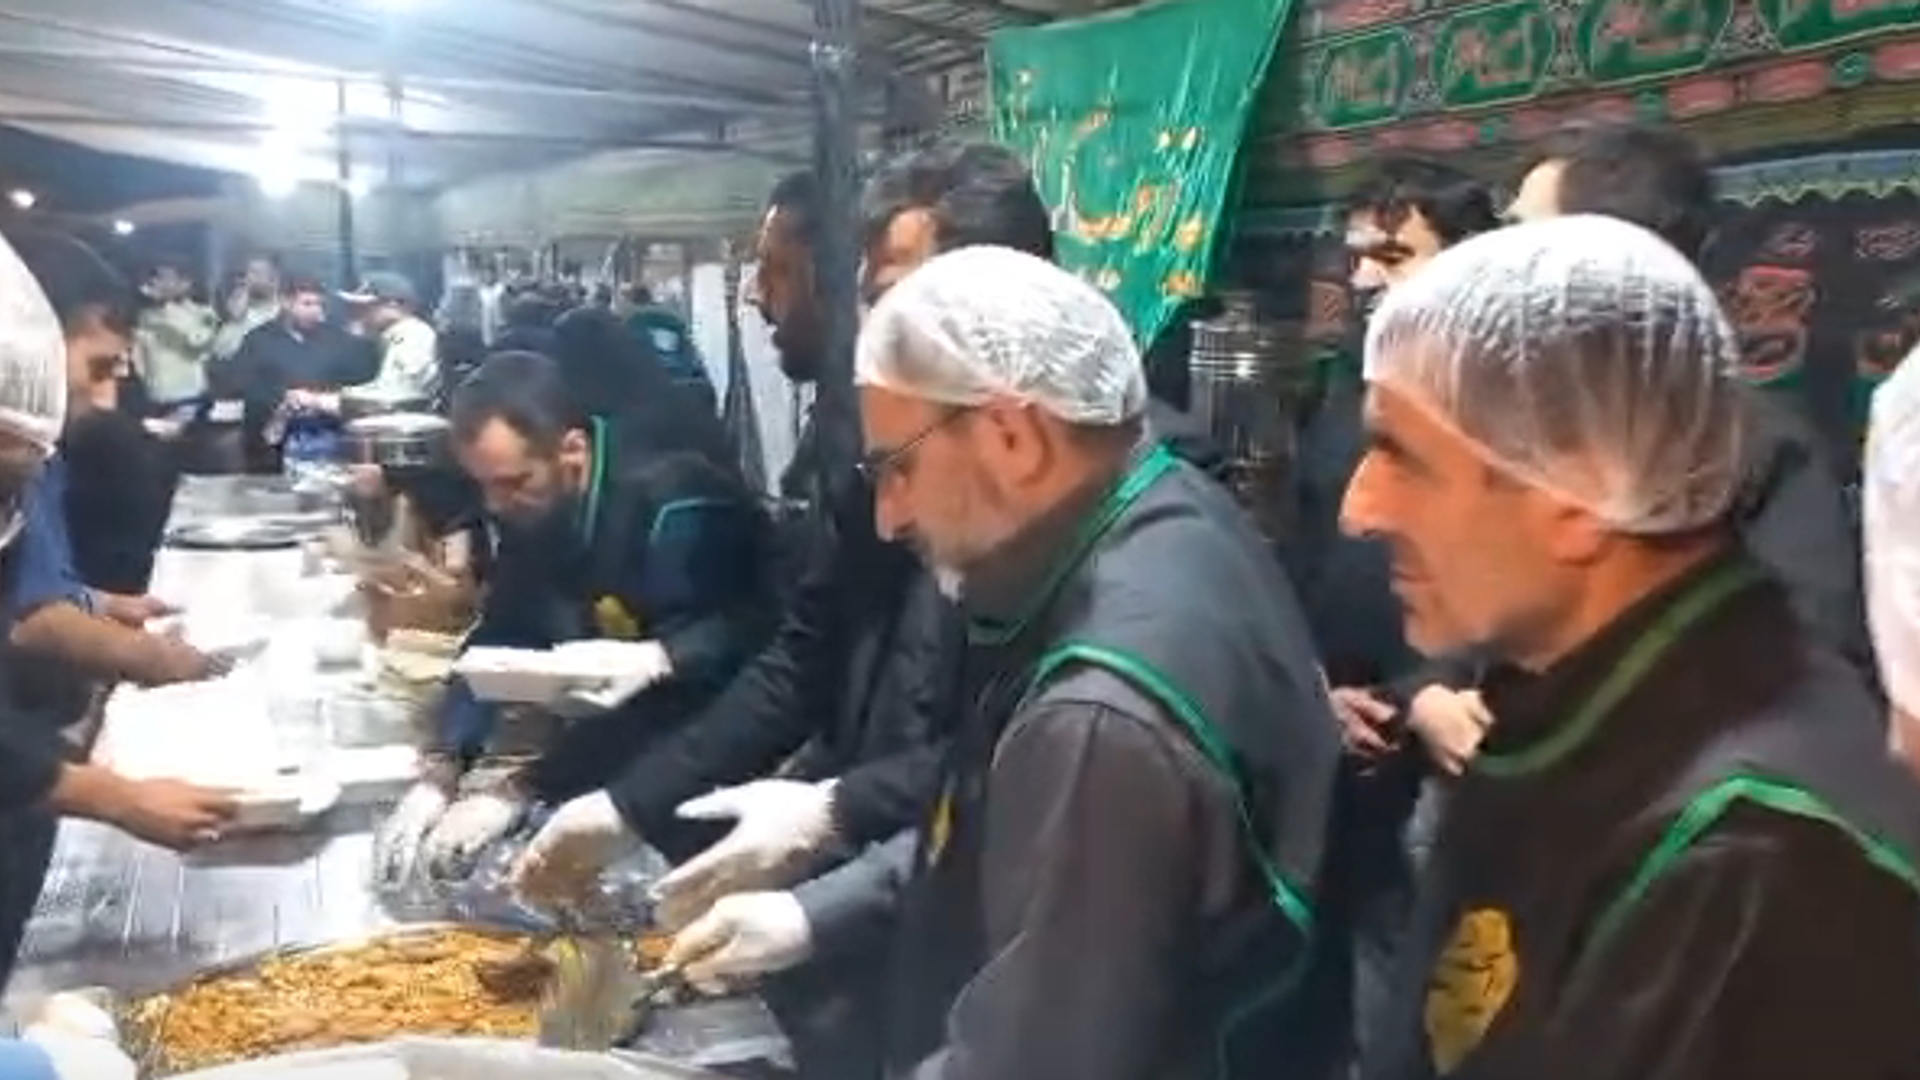 مشارکت استاندار و فرماندار در توزیع غذا به زائران اربعین حسینی